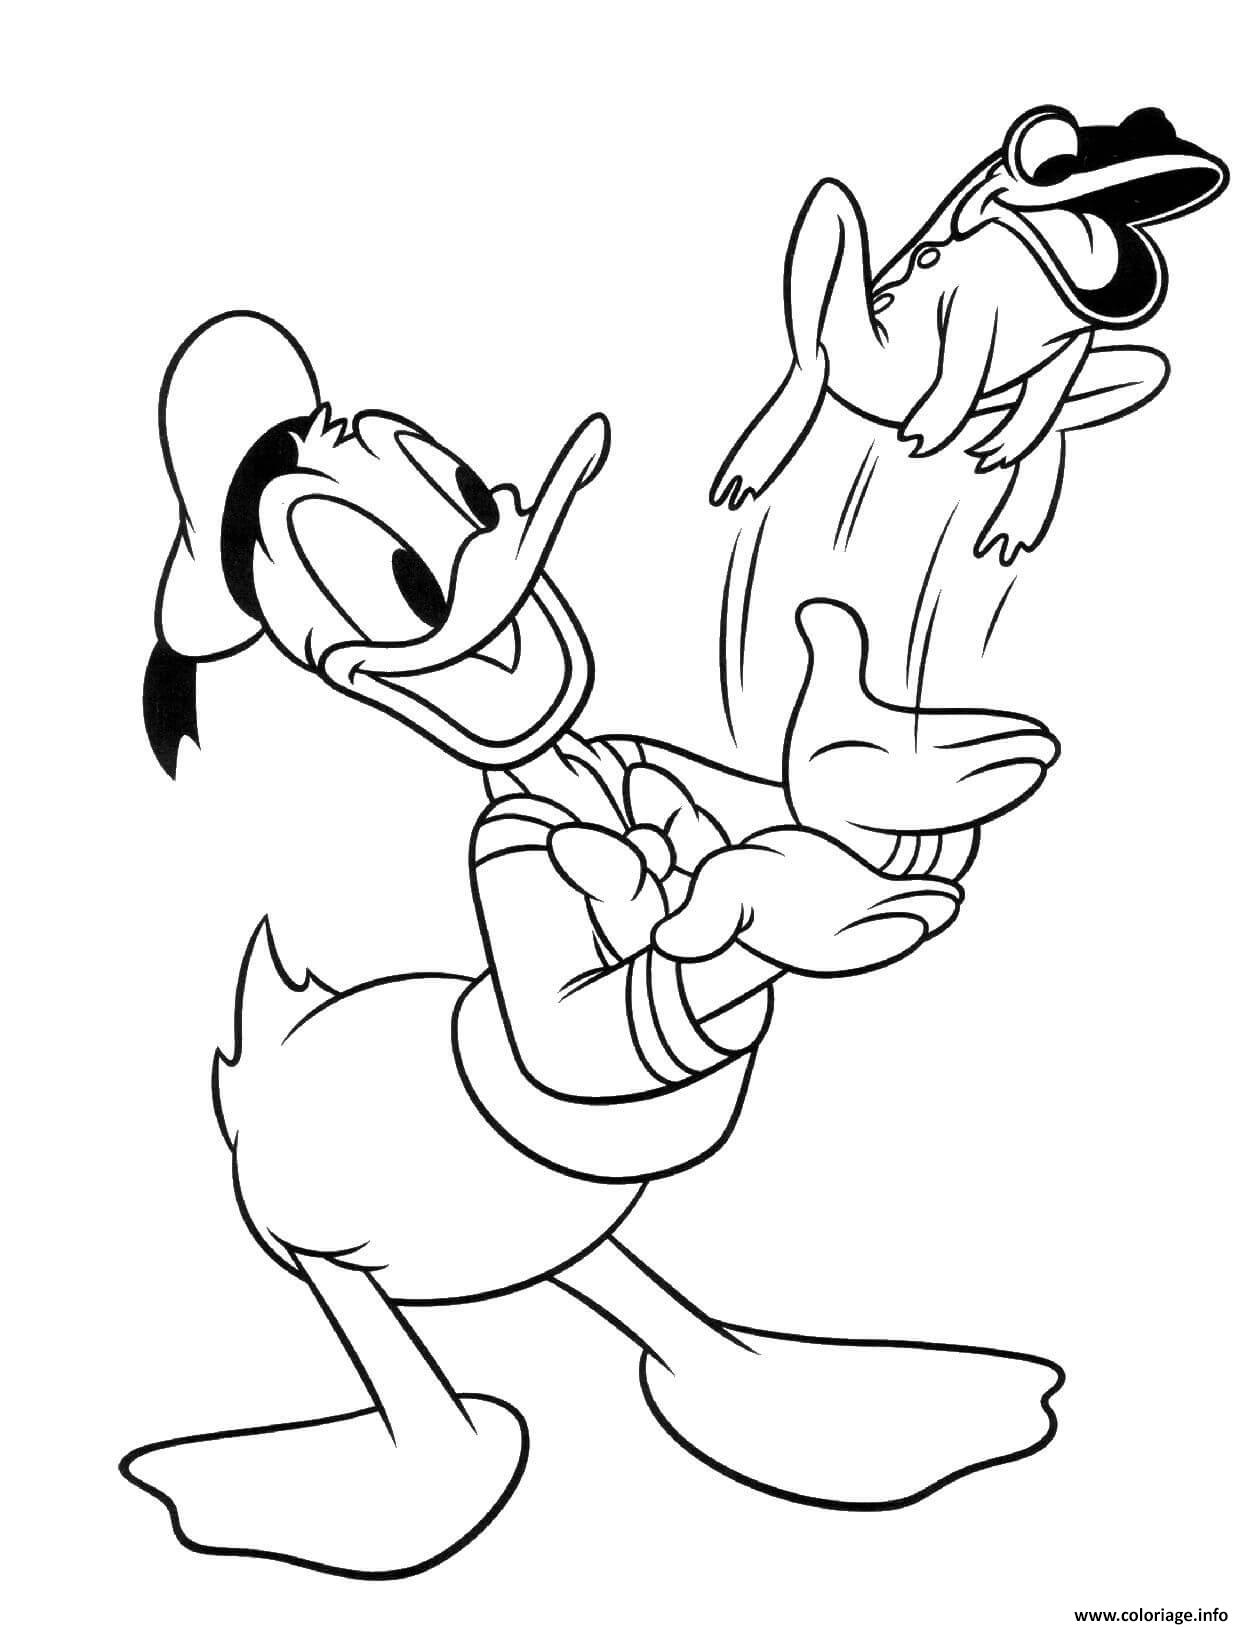 Dessin Donald Duck avec une grenouille Coloriage Gratuit à Imprimer